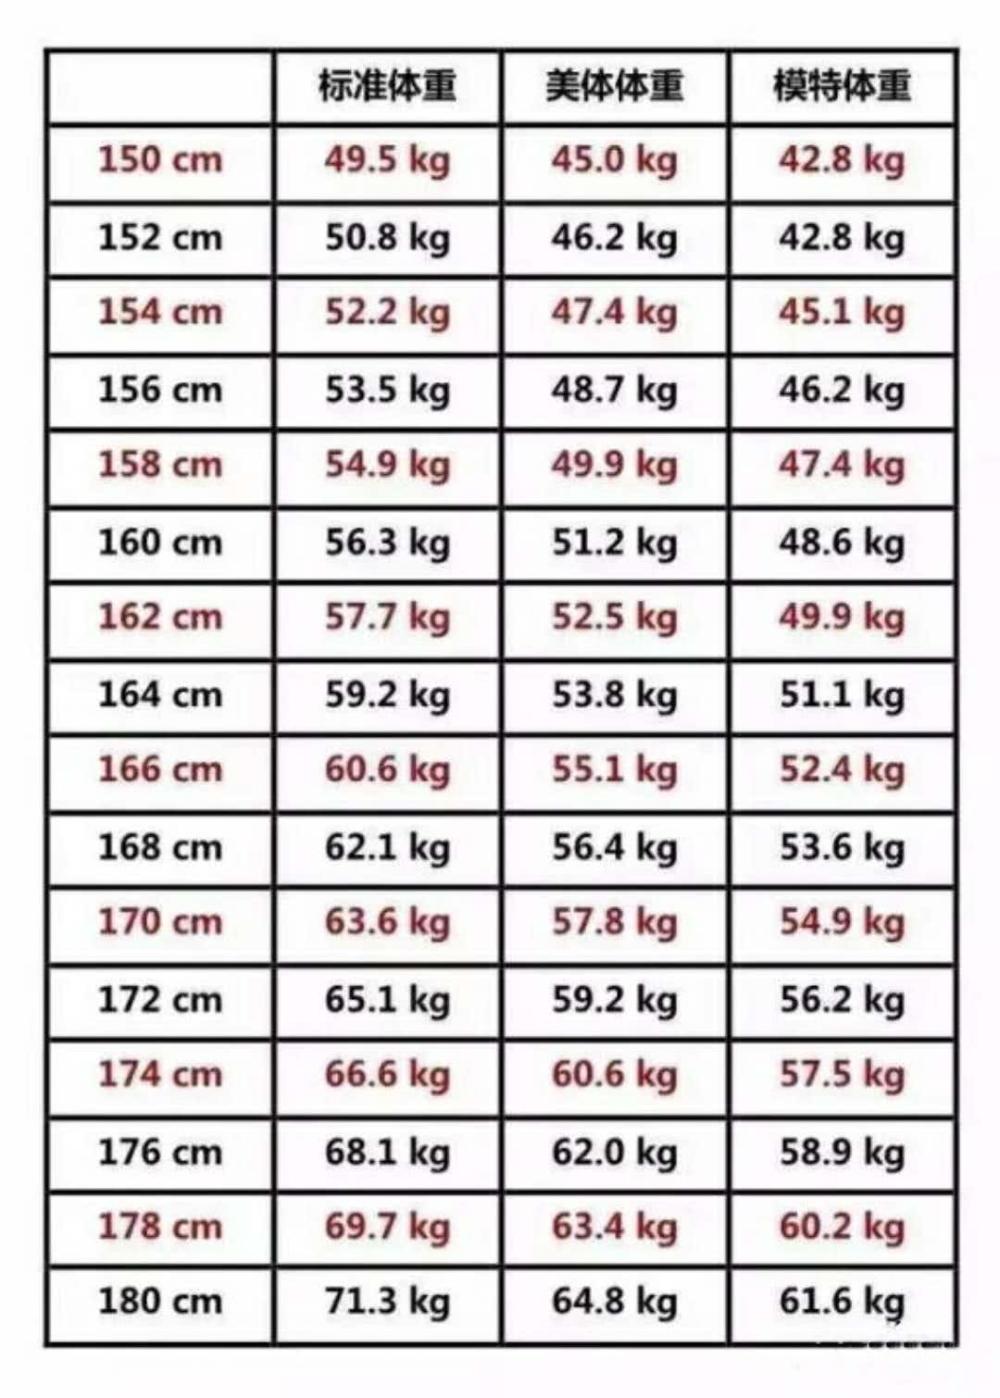 女性体重与身高对照表图片